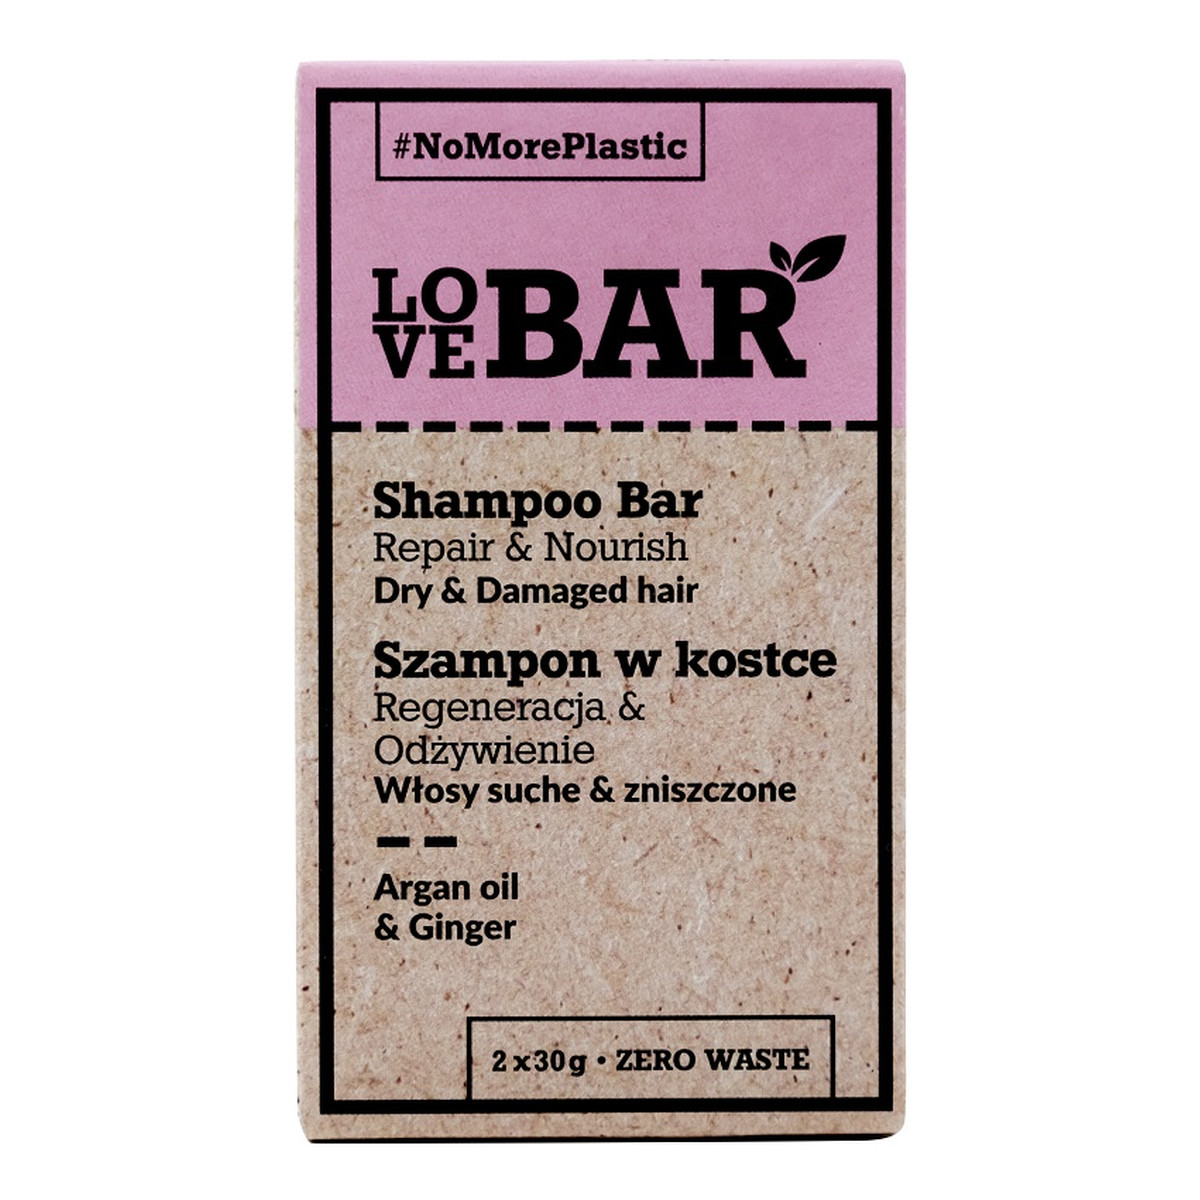 Love Bar Shampoo Bar Szampon w kostce do włosów suchych i zniszczonych Olej Arganowy & Imbir 2x30g 60g